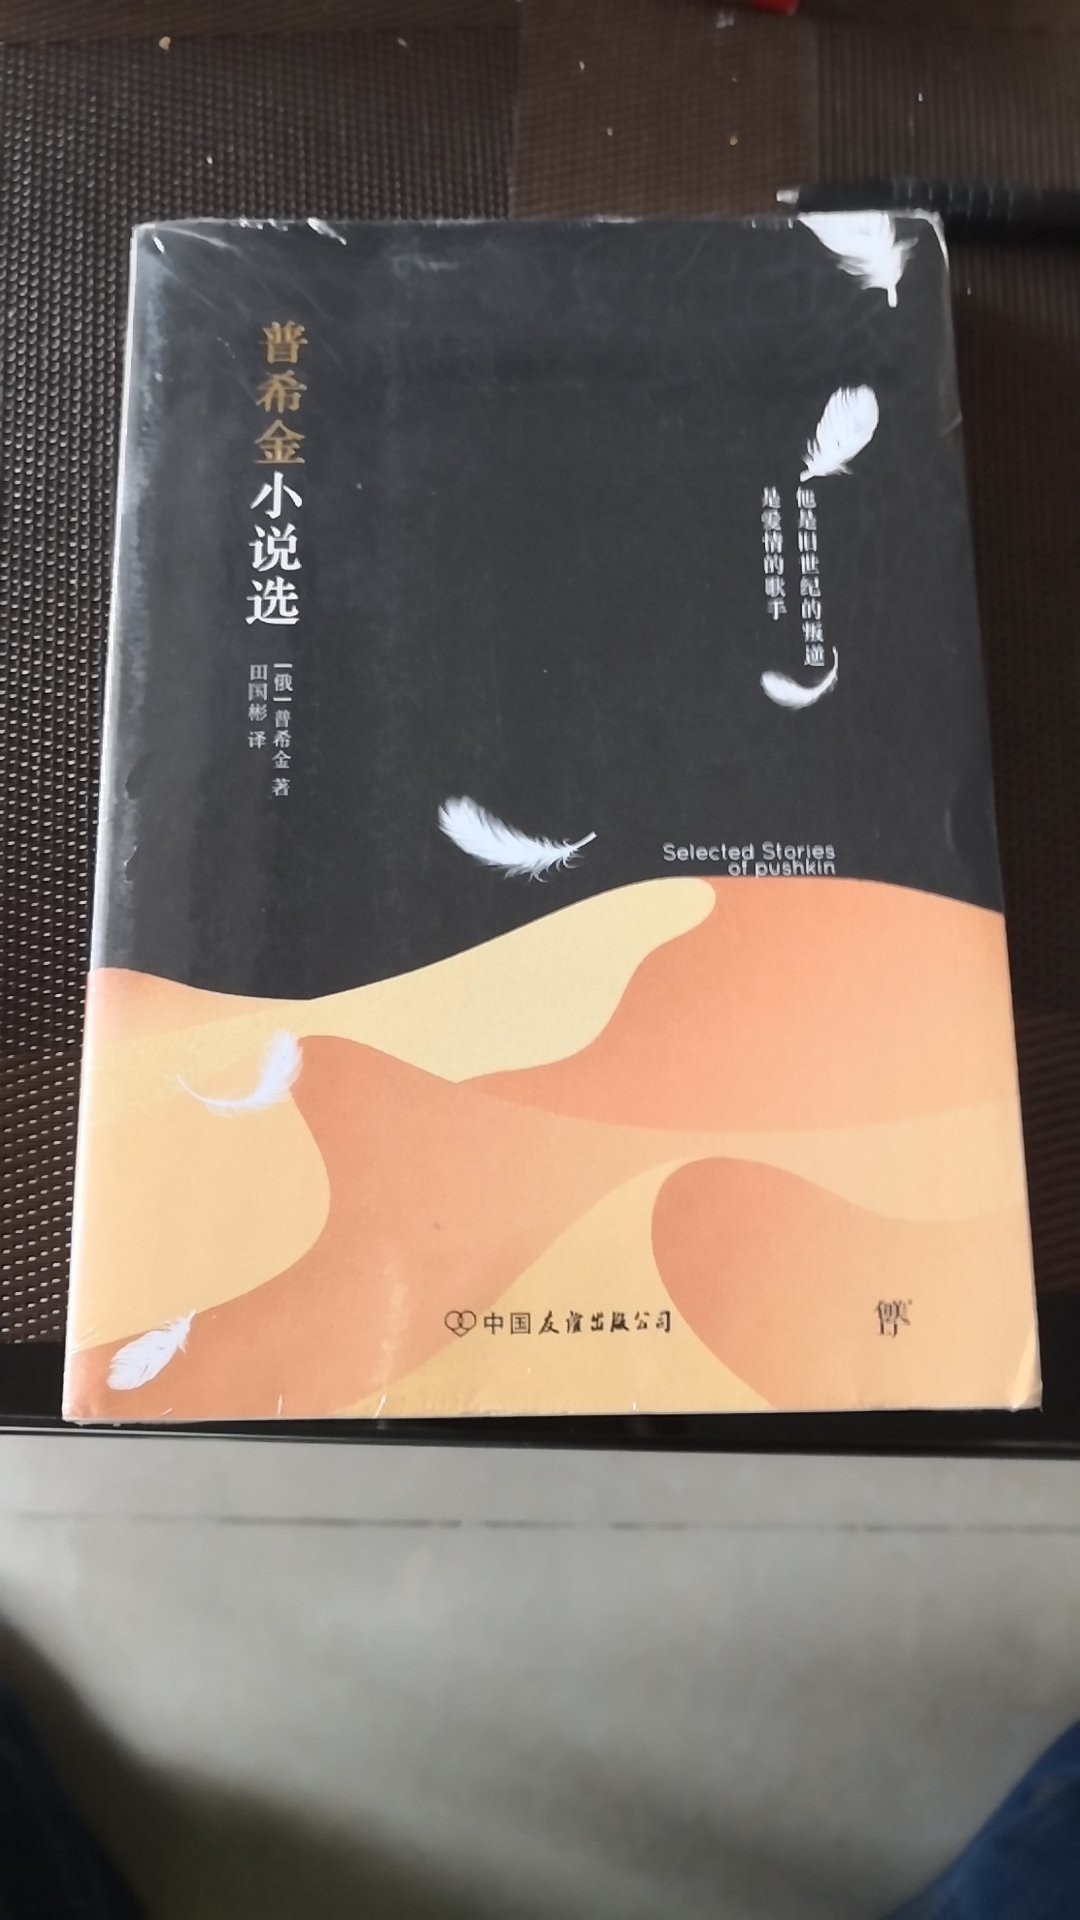 普希金的小说以前看过，现在买一本珍藏一下，看样子是不错的，但不知道这个中国友谊出版社的行不行。不说别的，上照片先。应该是正版。